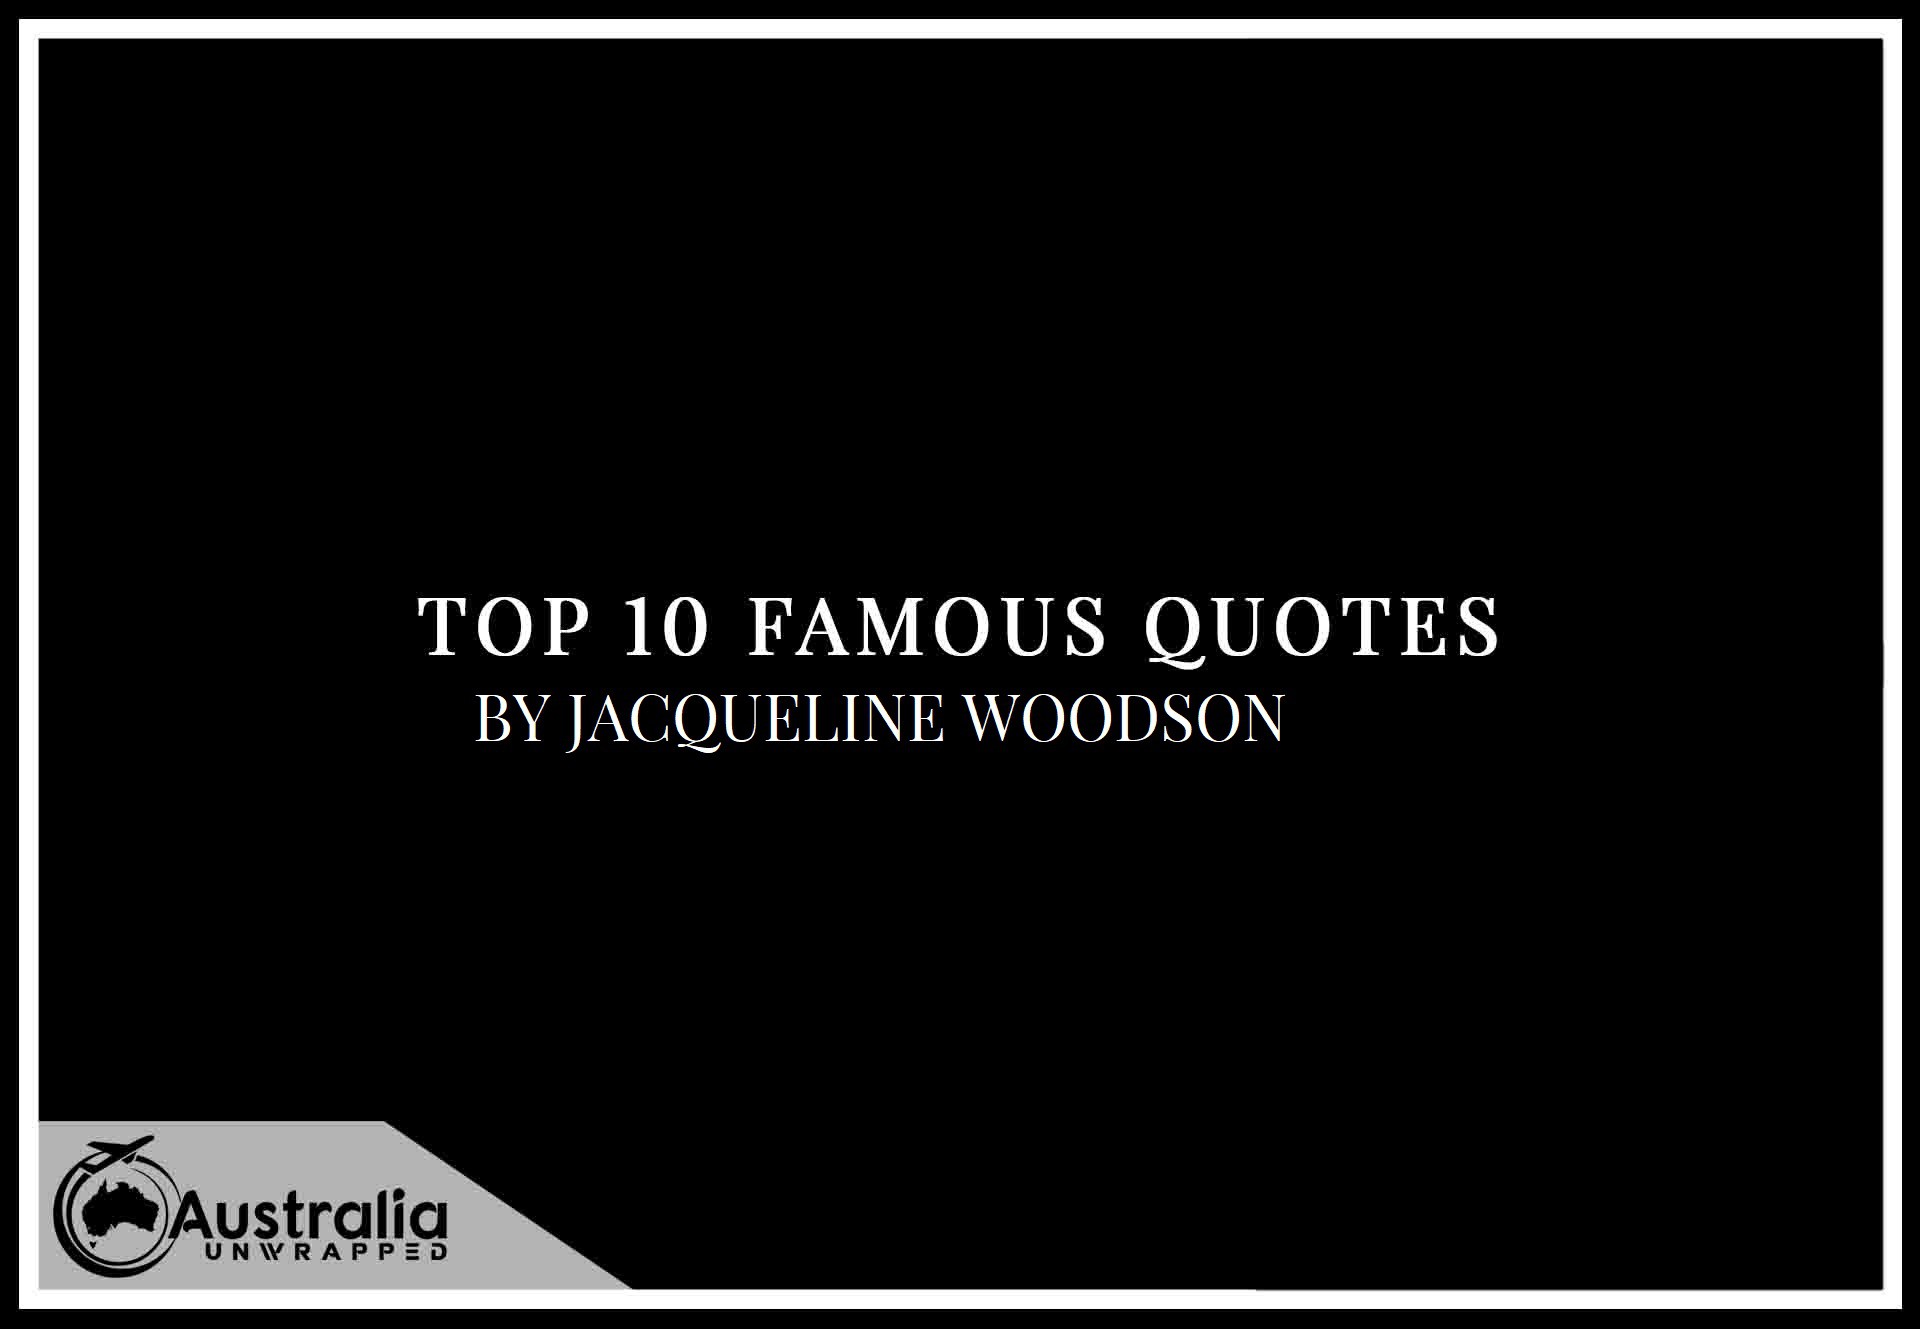 Top 10 Famous Quotes by Author Jacqueline Woodson